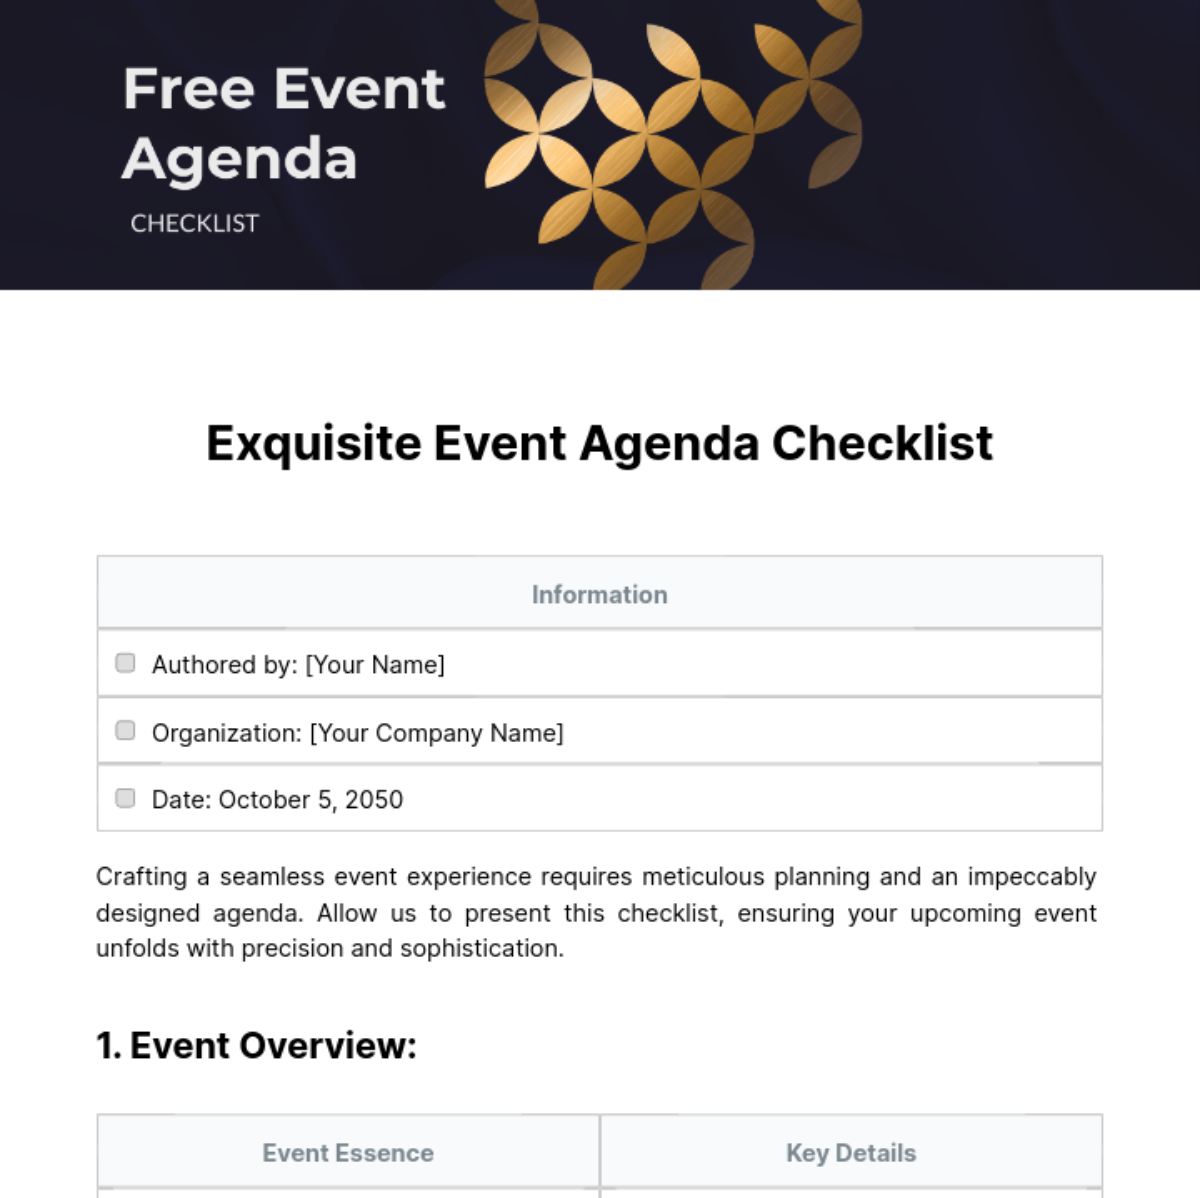 Free Event Agenda Checklist Template